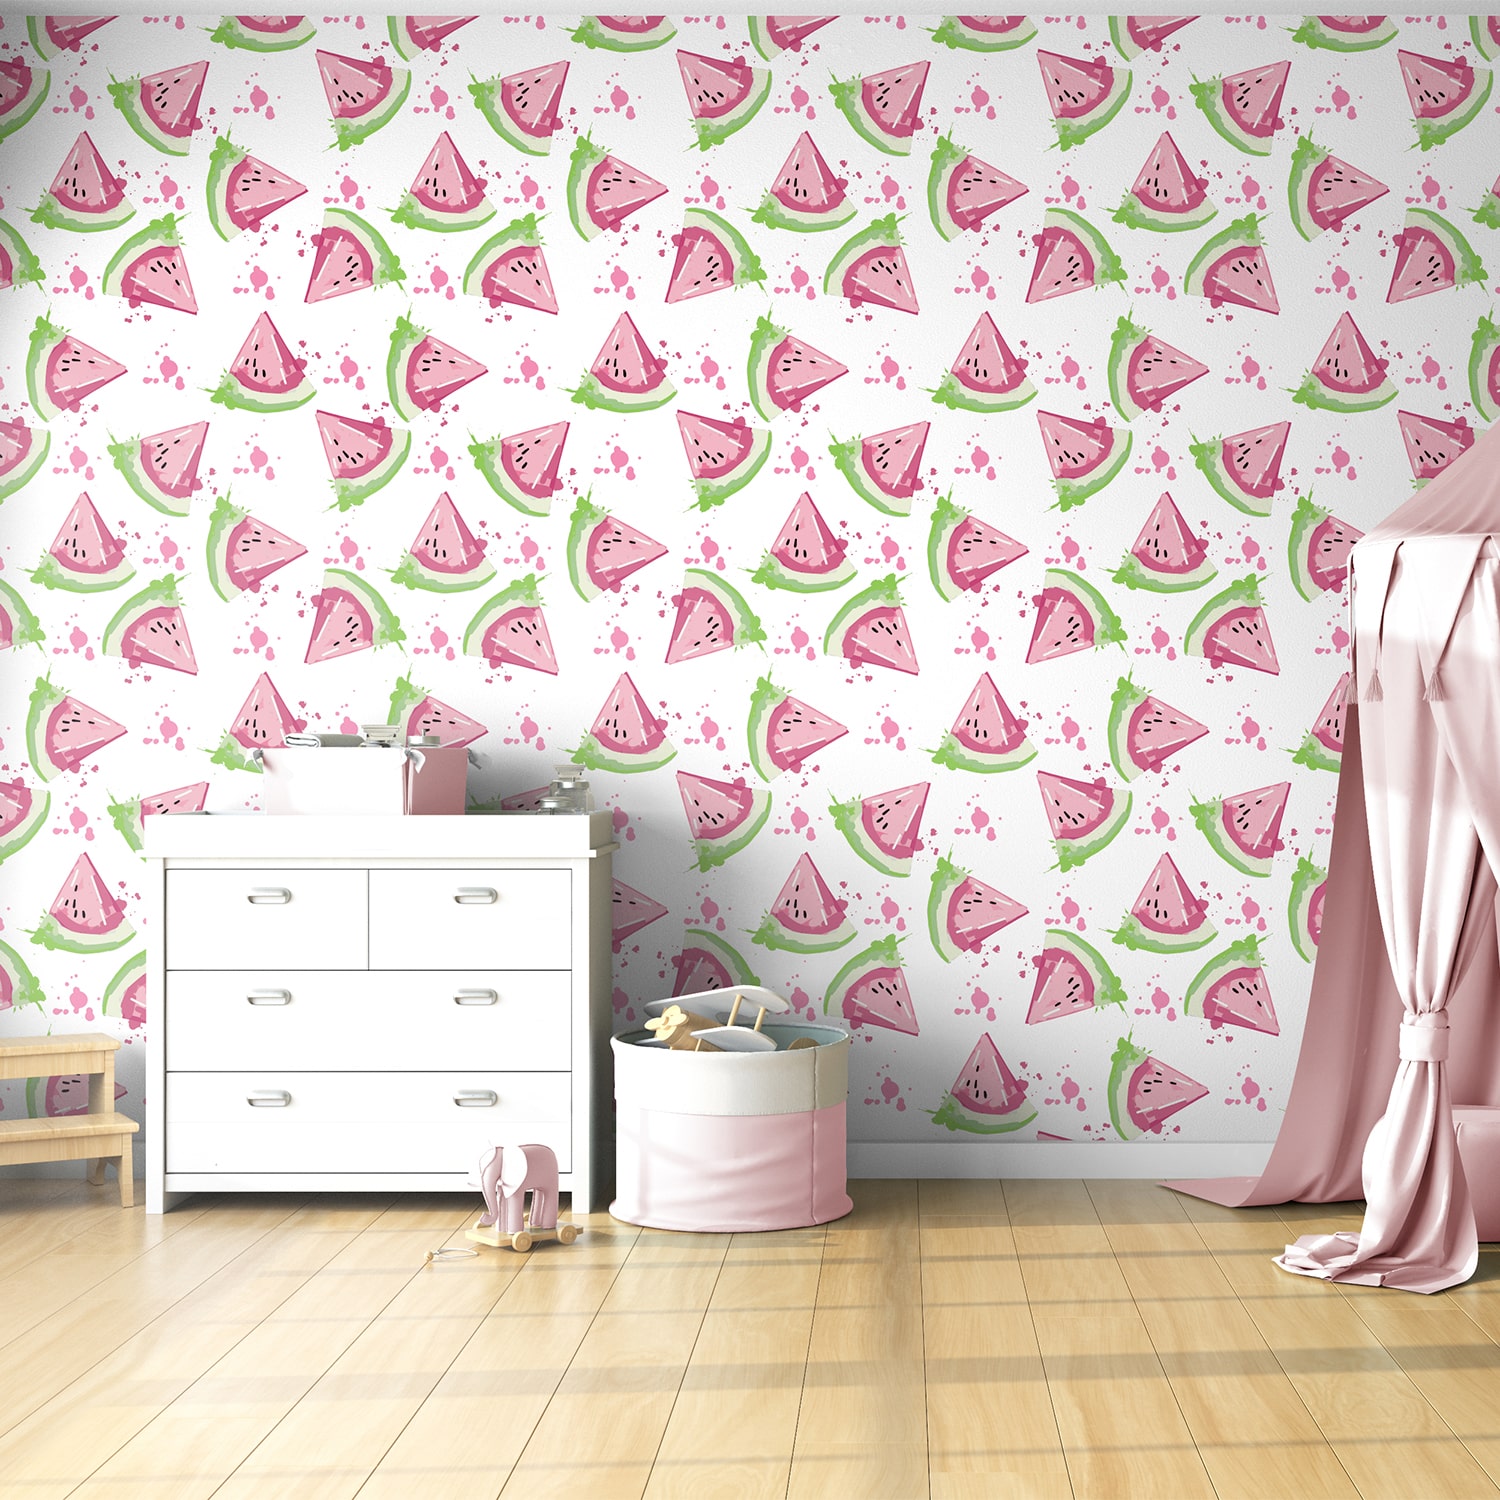 PP86-mur-papier-peint-adhesif-decoratif-revetement-vinyle-motifs-pastèque-renovation-meuble-mur-min